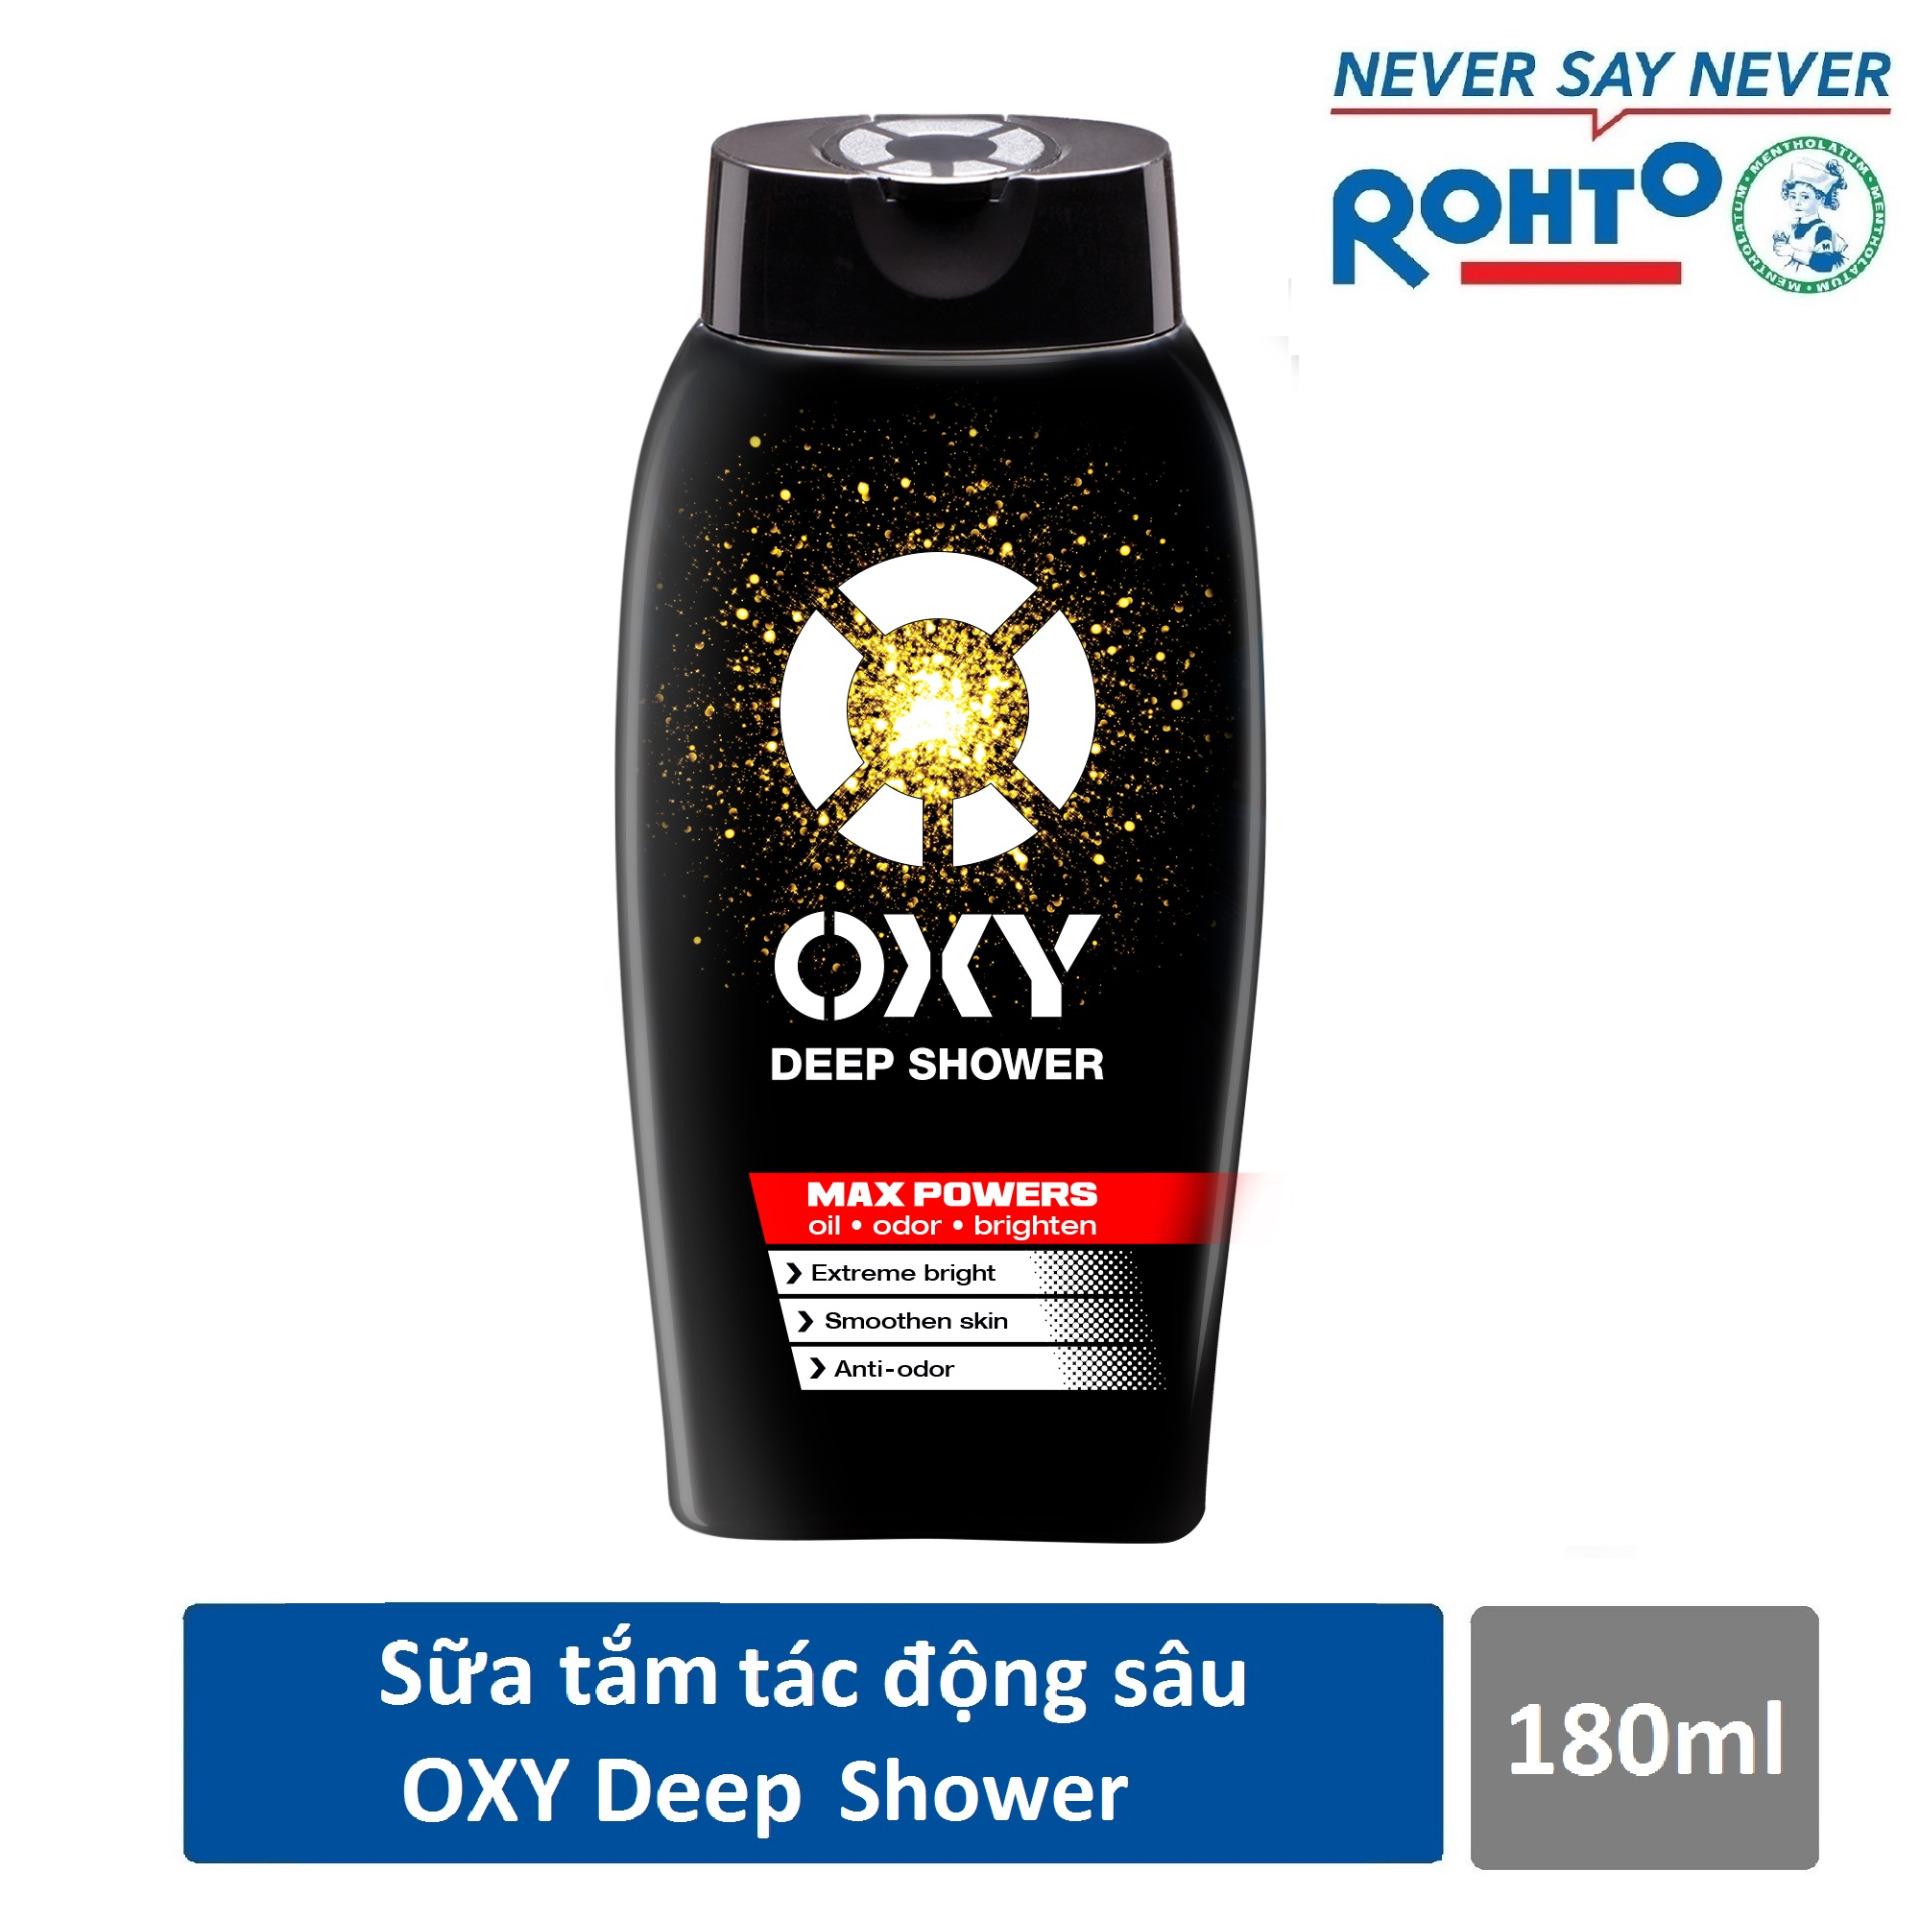 Sữa tắm tác động sâu cho nam Oxy Deep Shower 180ml